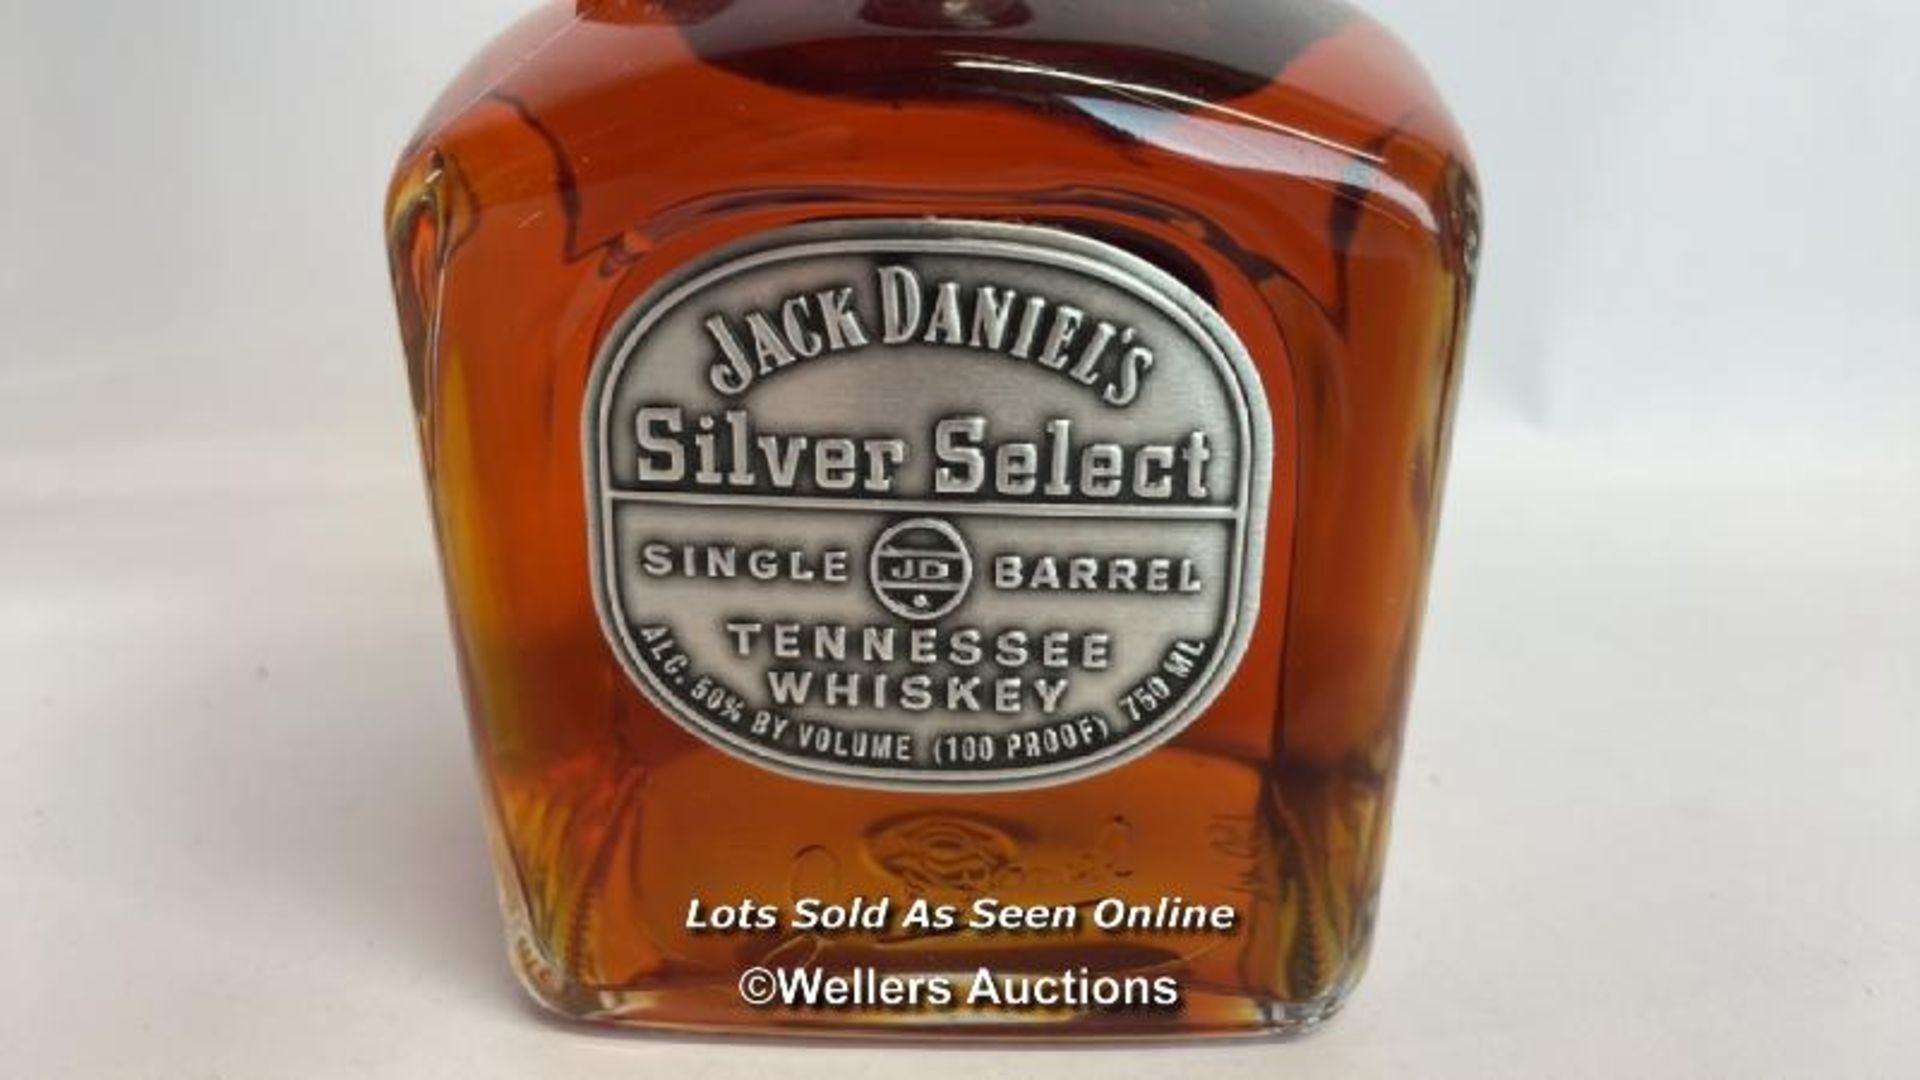 Jack Daniels Silver Select Single Barrel Tennessee Whiskey, Release date: 11-03-99, Barrek no: 9- - Bild 6 aus 8